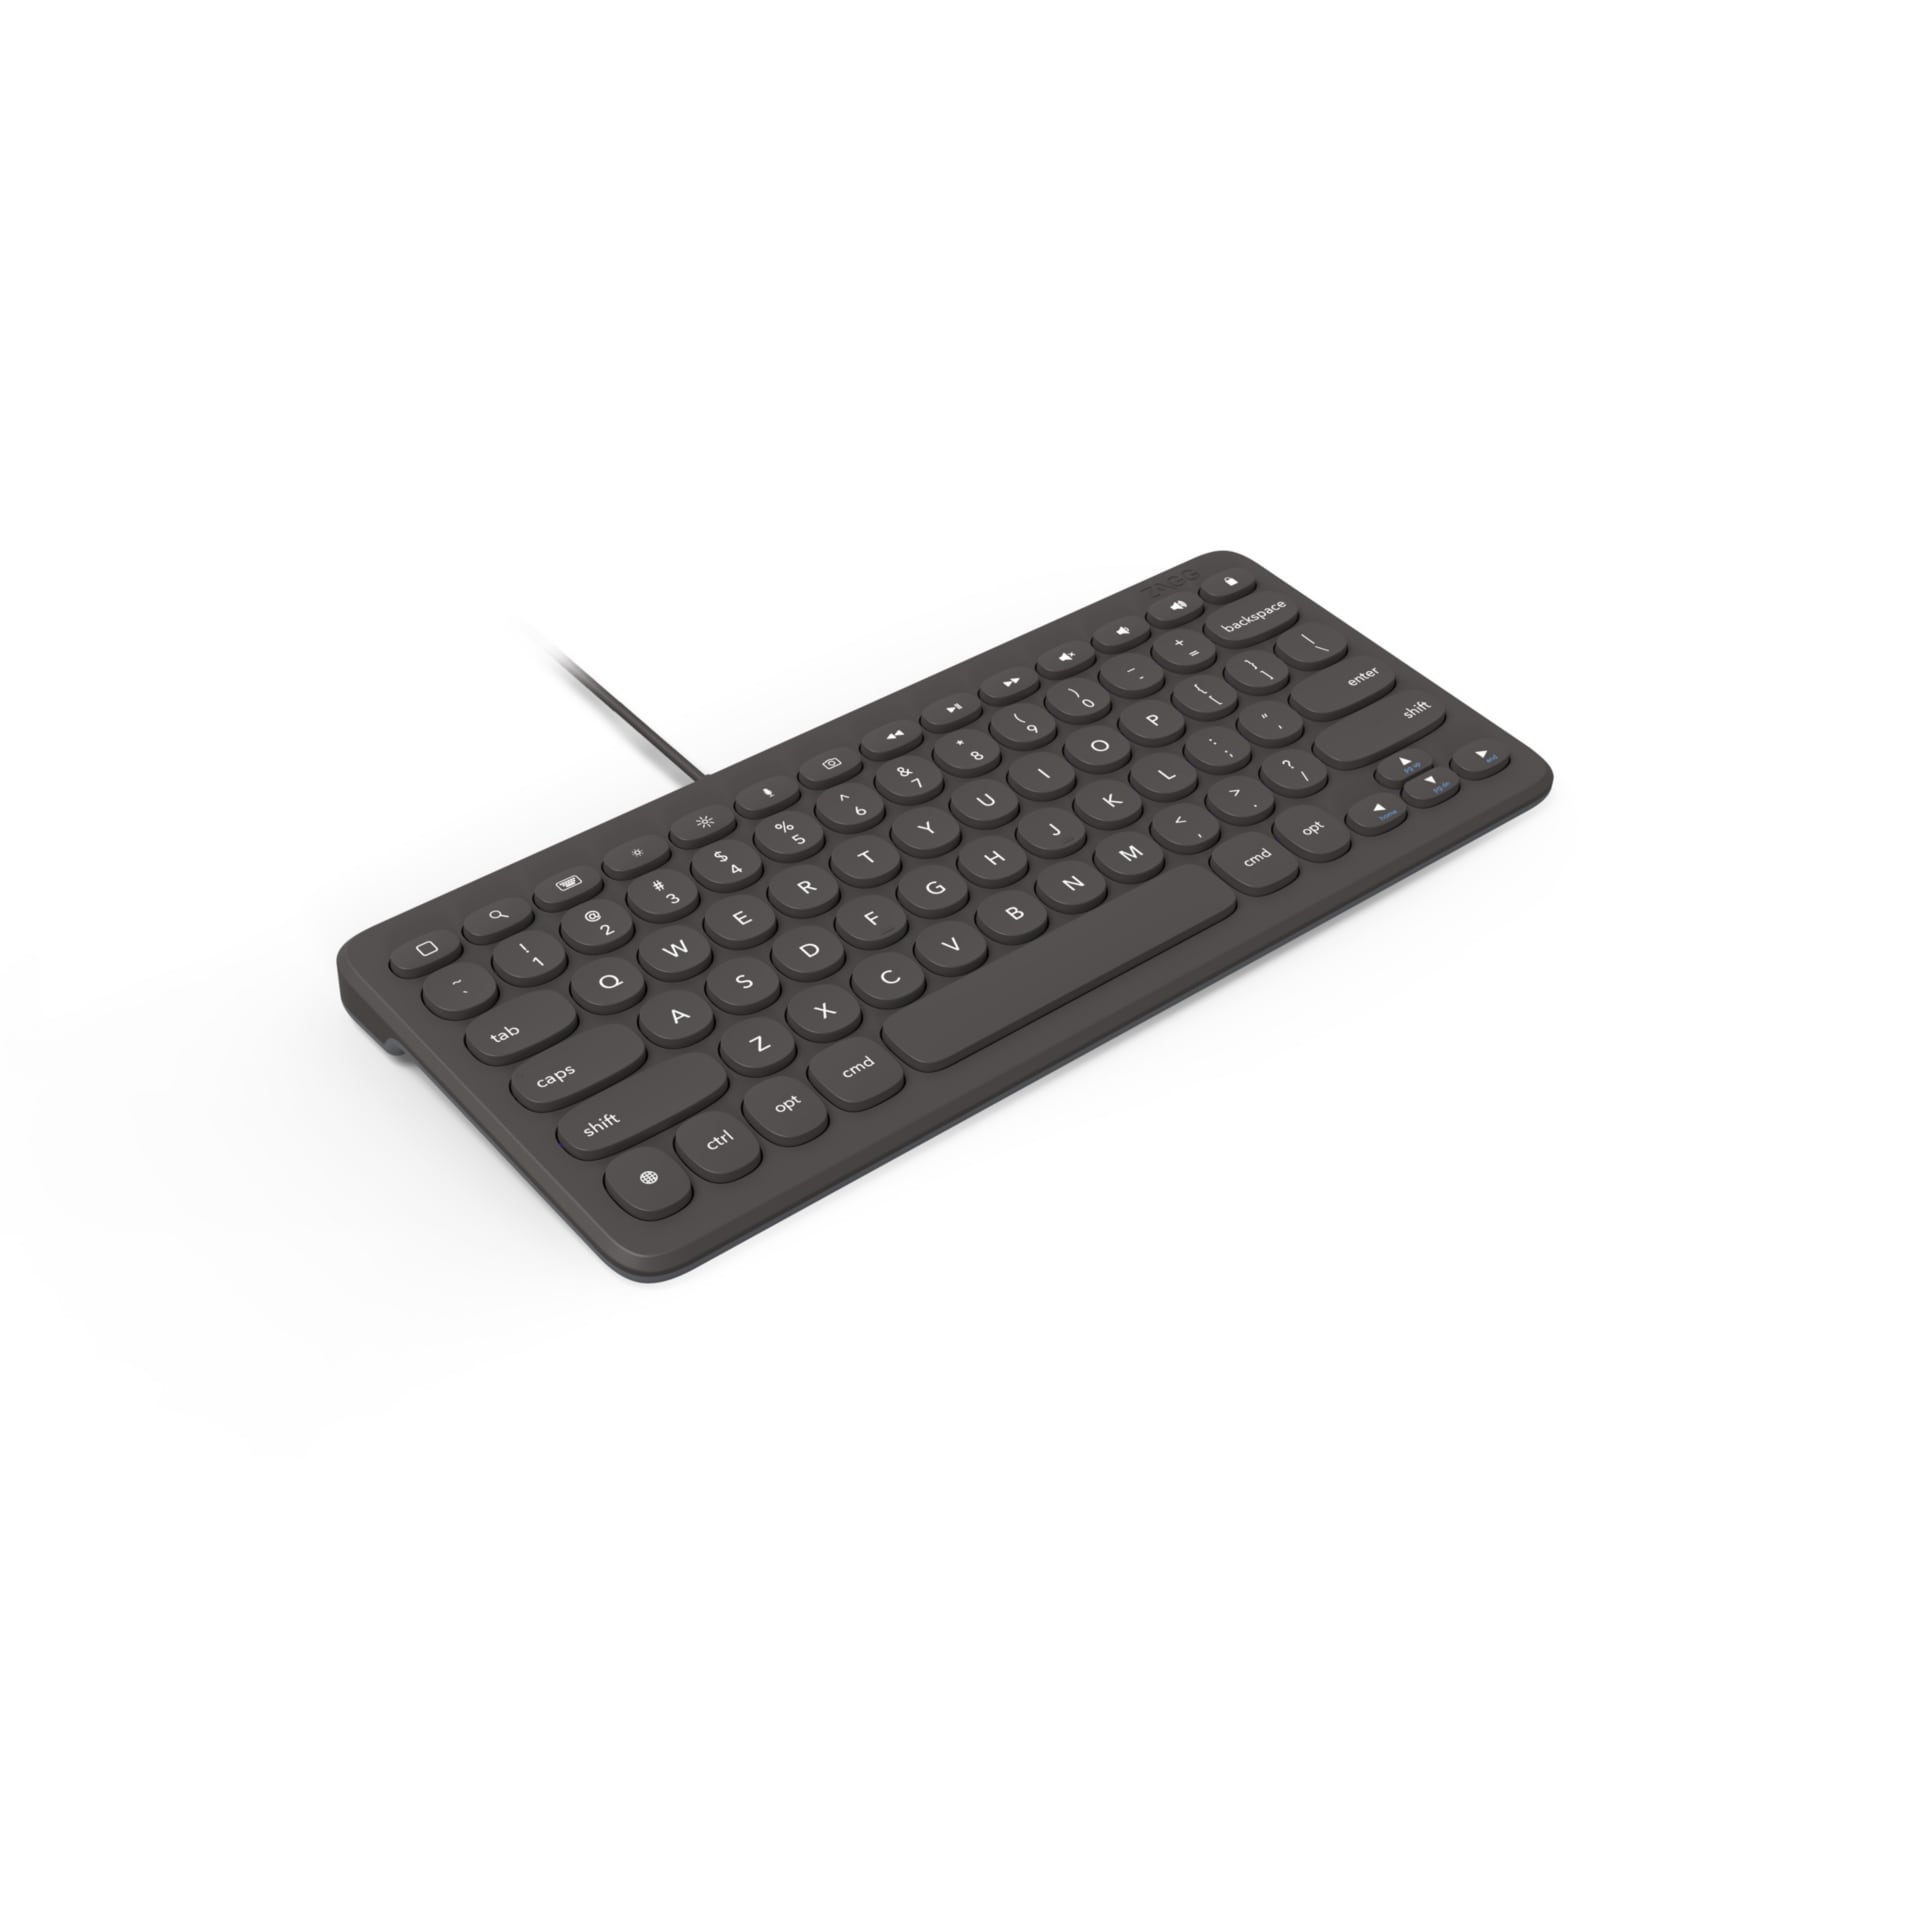 ZAGG Connect Keyboard